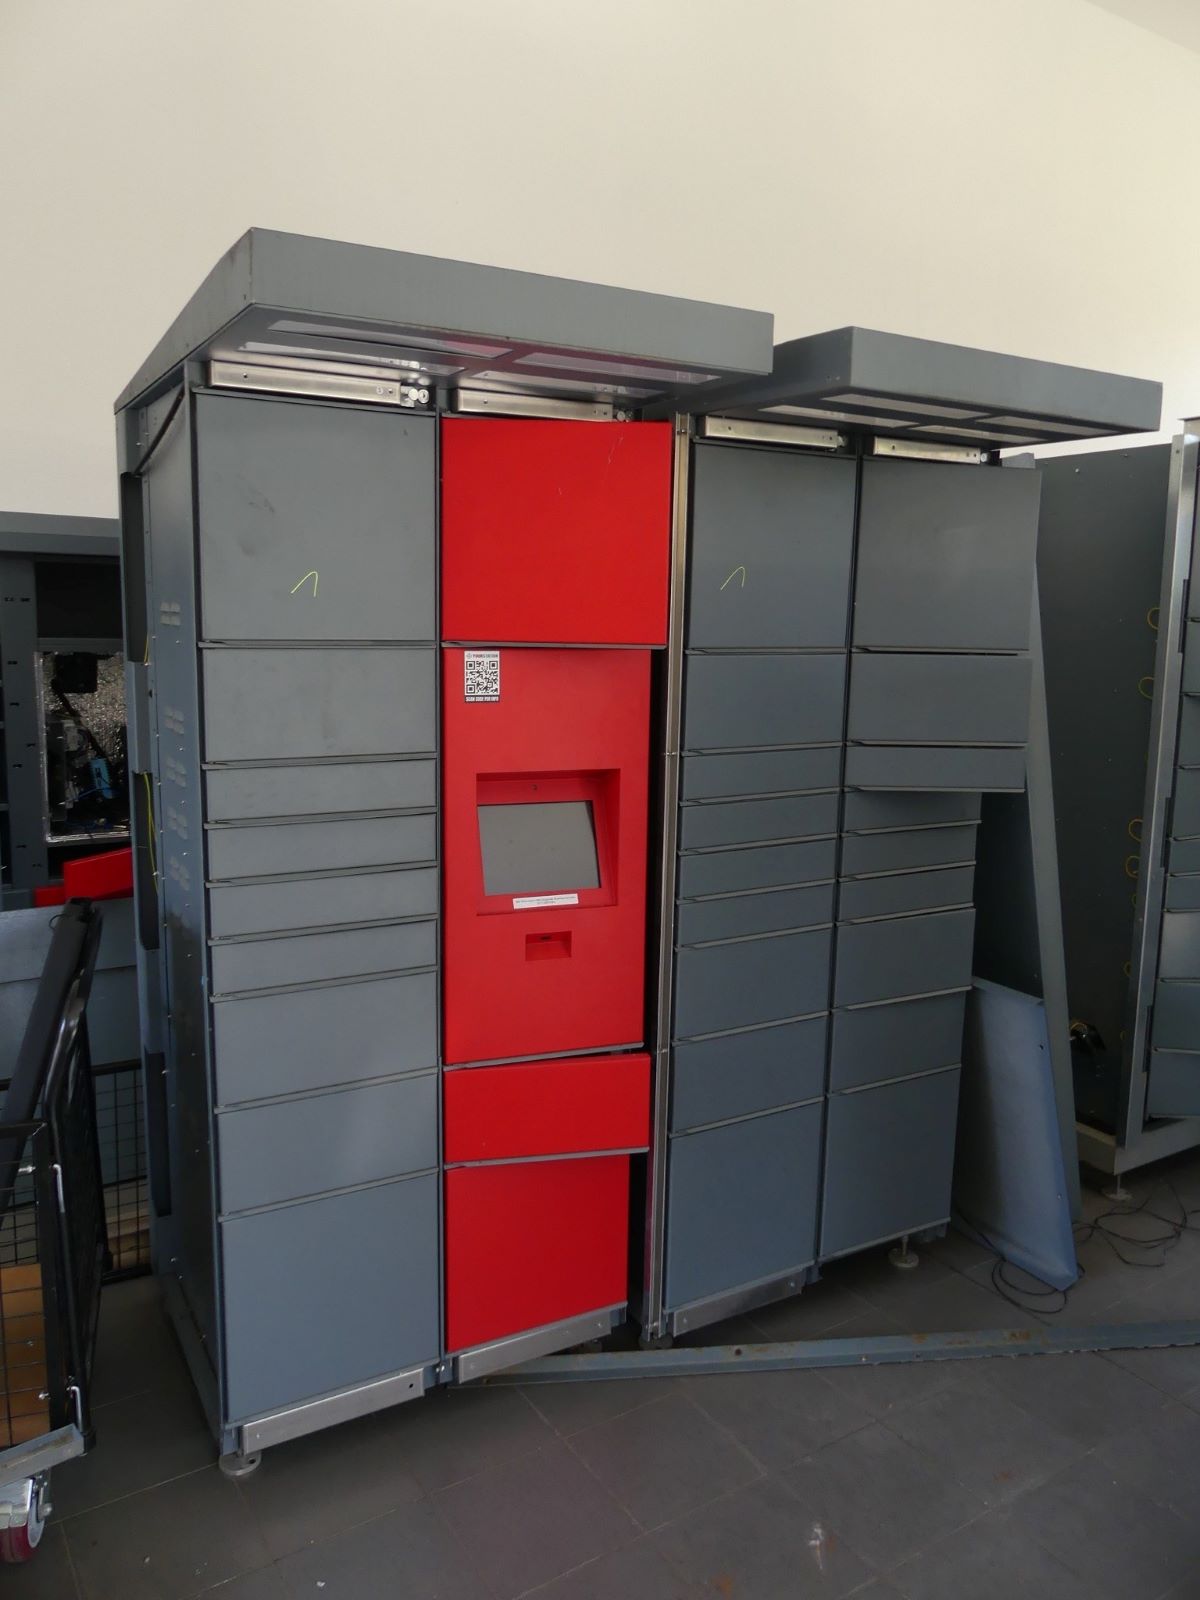 Depot locker systems